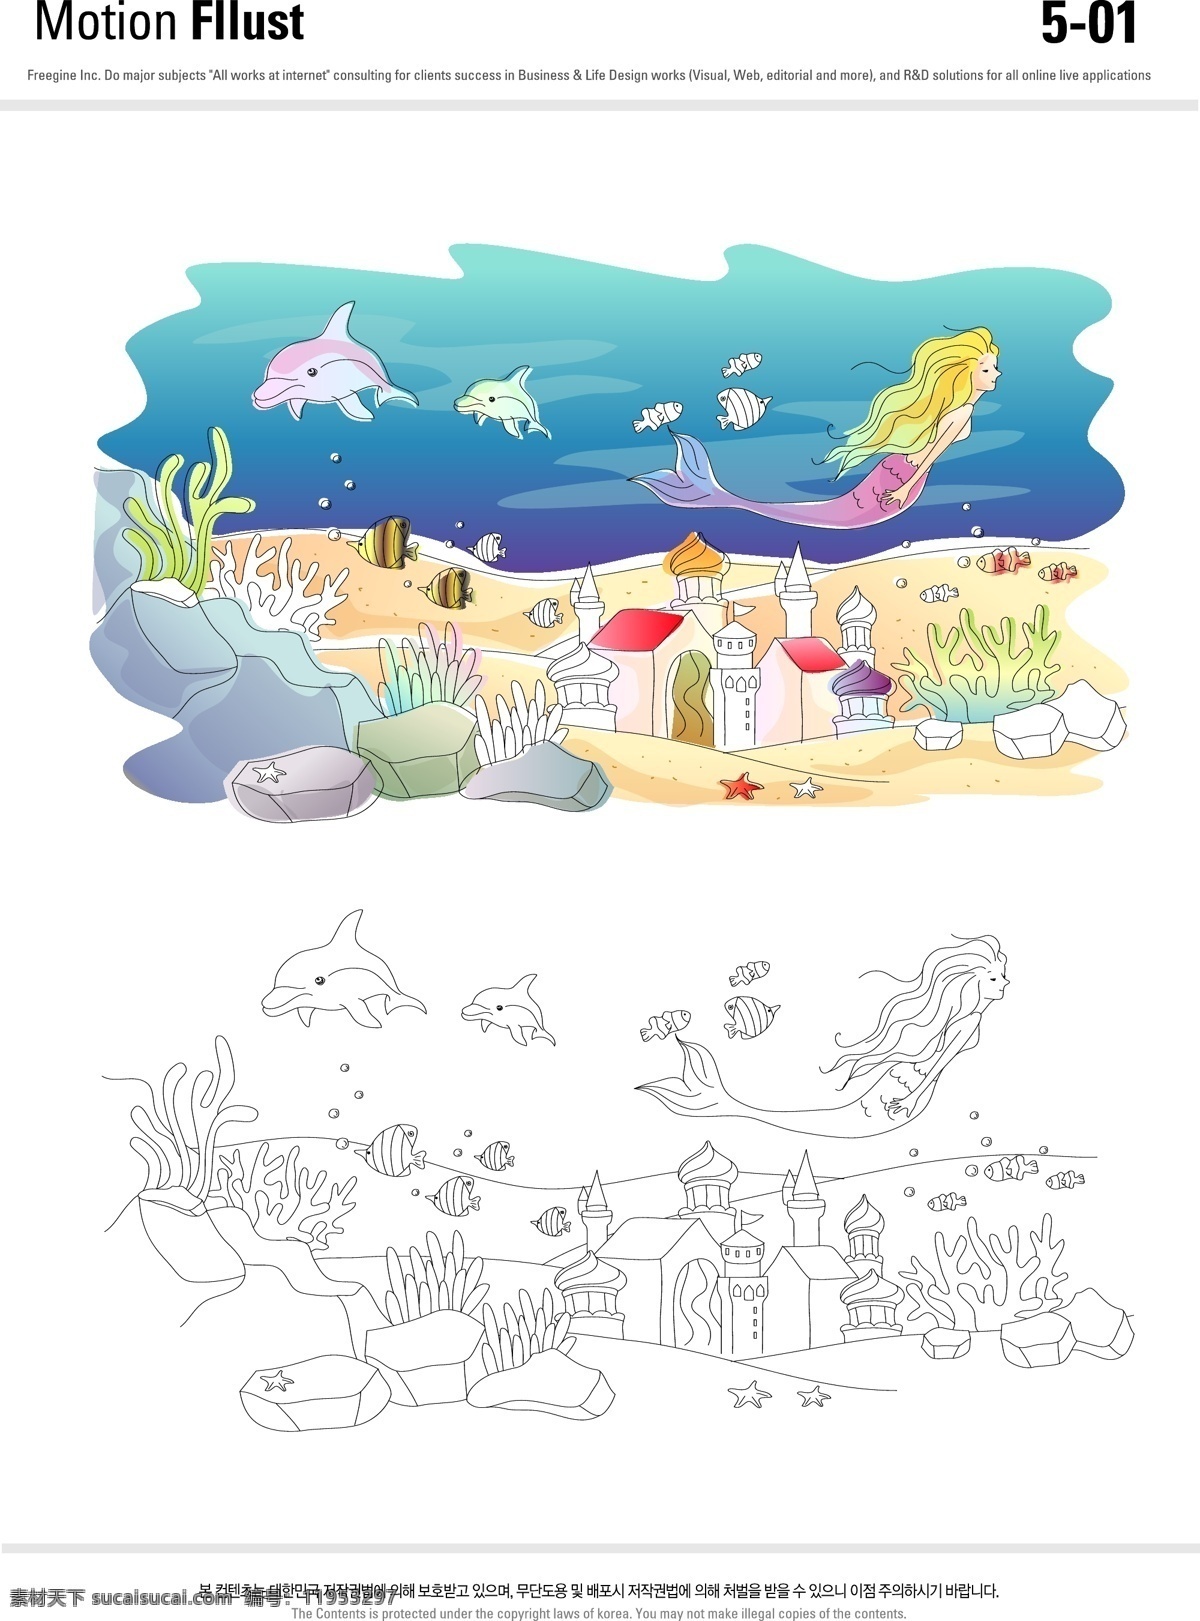 人鱼公主插画 海底世界 童话世界 美人鱼 海底城堡 人鱼公主 海豚 鱼儿 珊瑚 矢量插画 动漫动画 风景漫画 白色